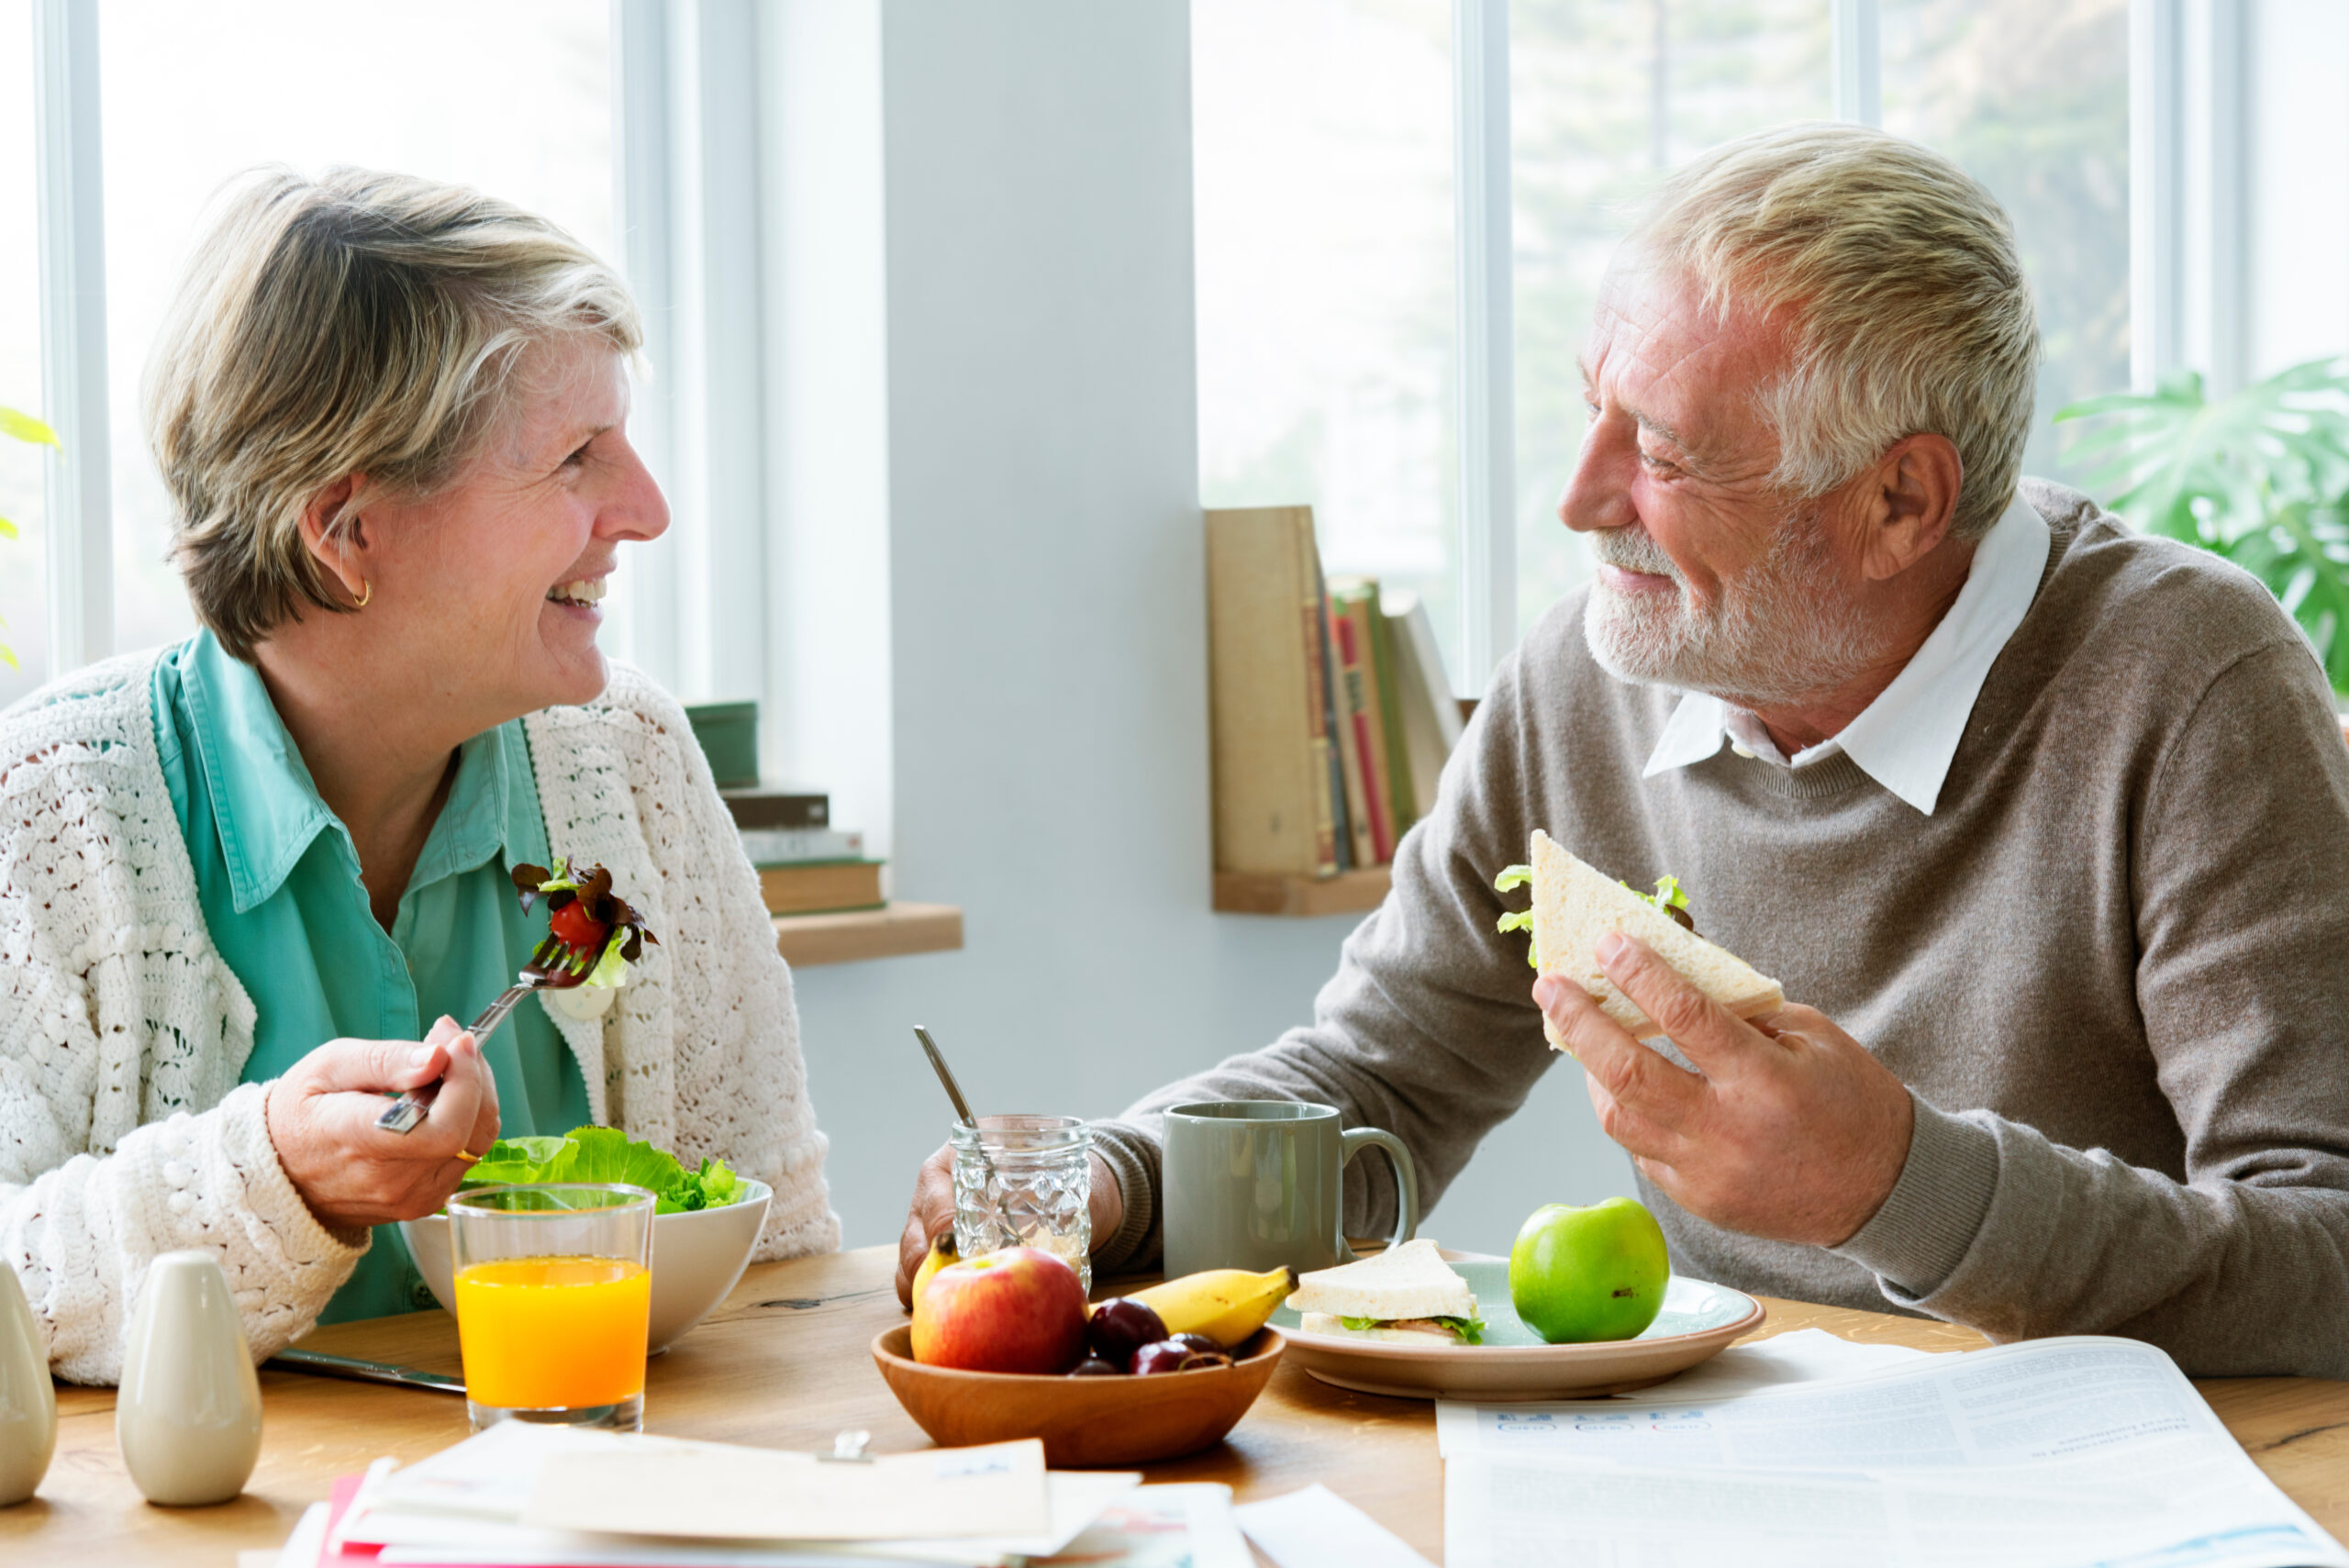 Older couple eating meal fit for proper senior nutrition.